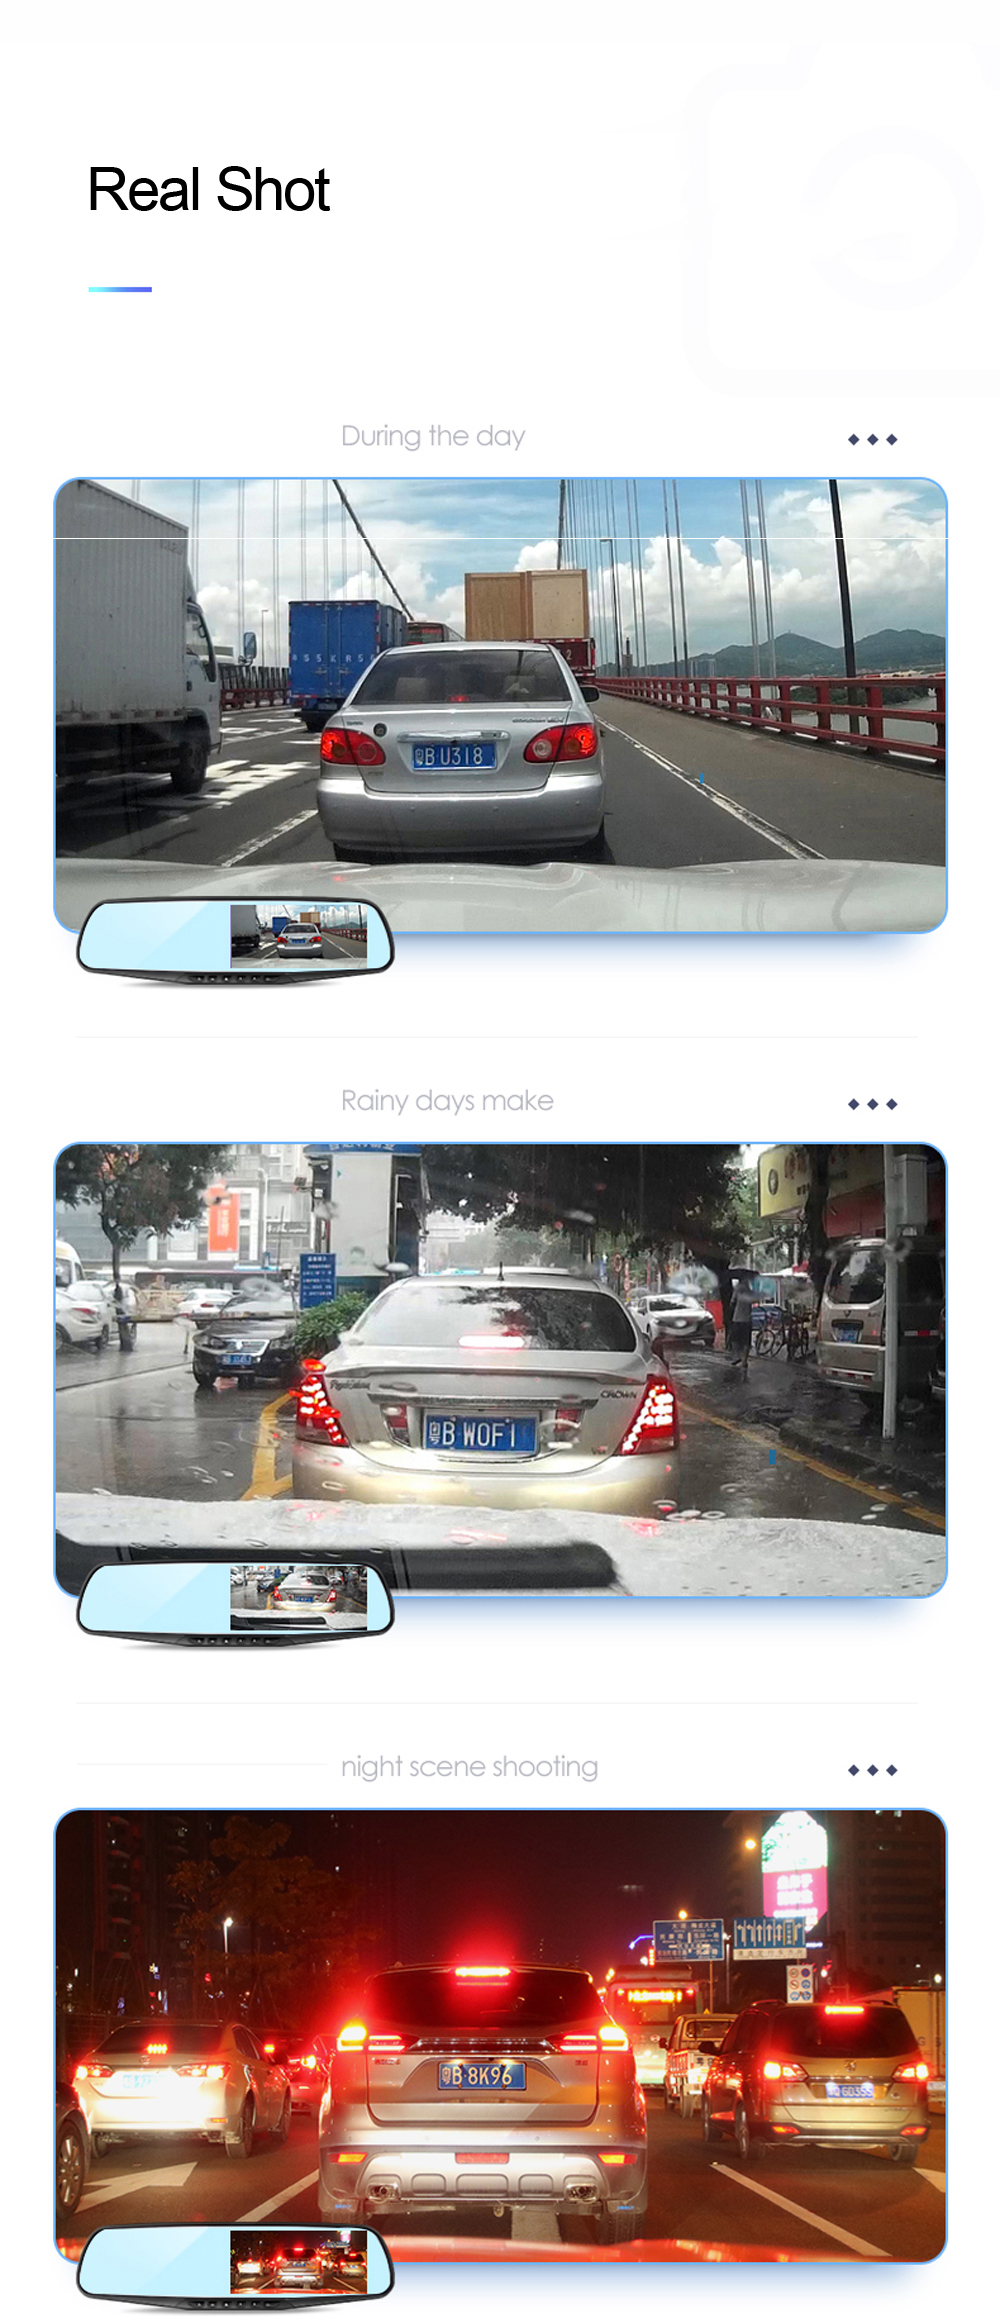 Автомобильный регистратор ADDKEY, видеорегистратор с камерой Full HD 1080P и монитором 4.3'', зеркало заднего вида с двойной видео камерой, записывающая видео камера для авто